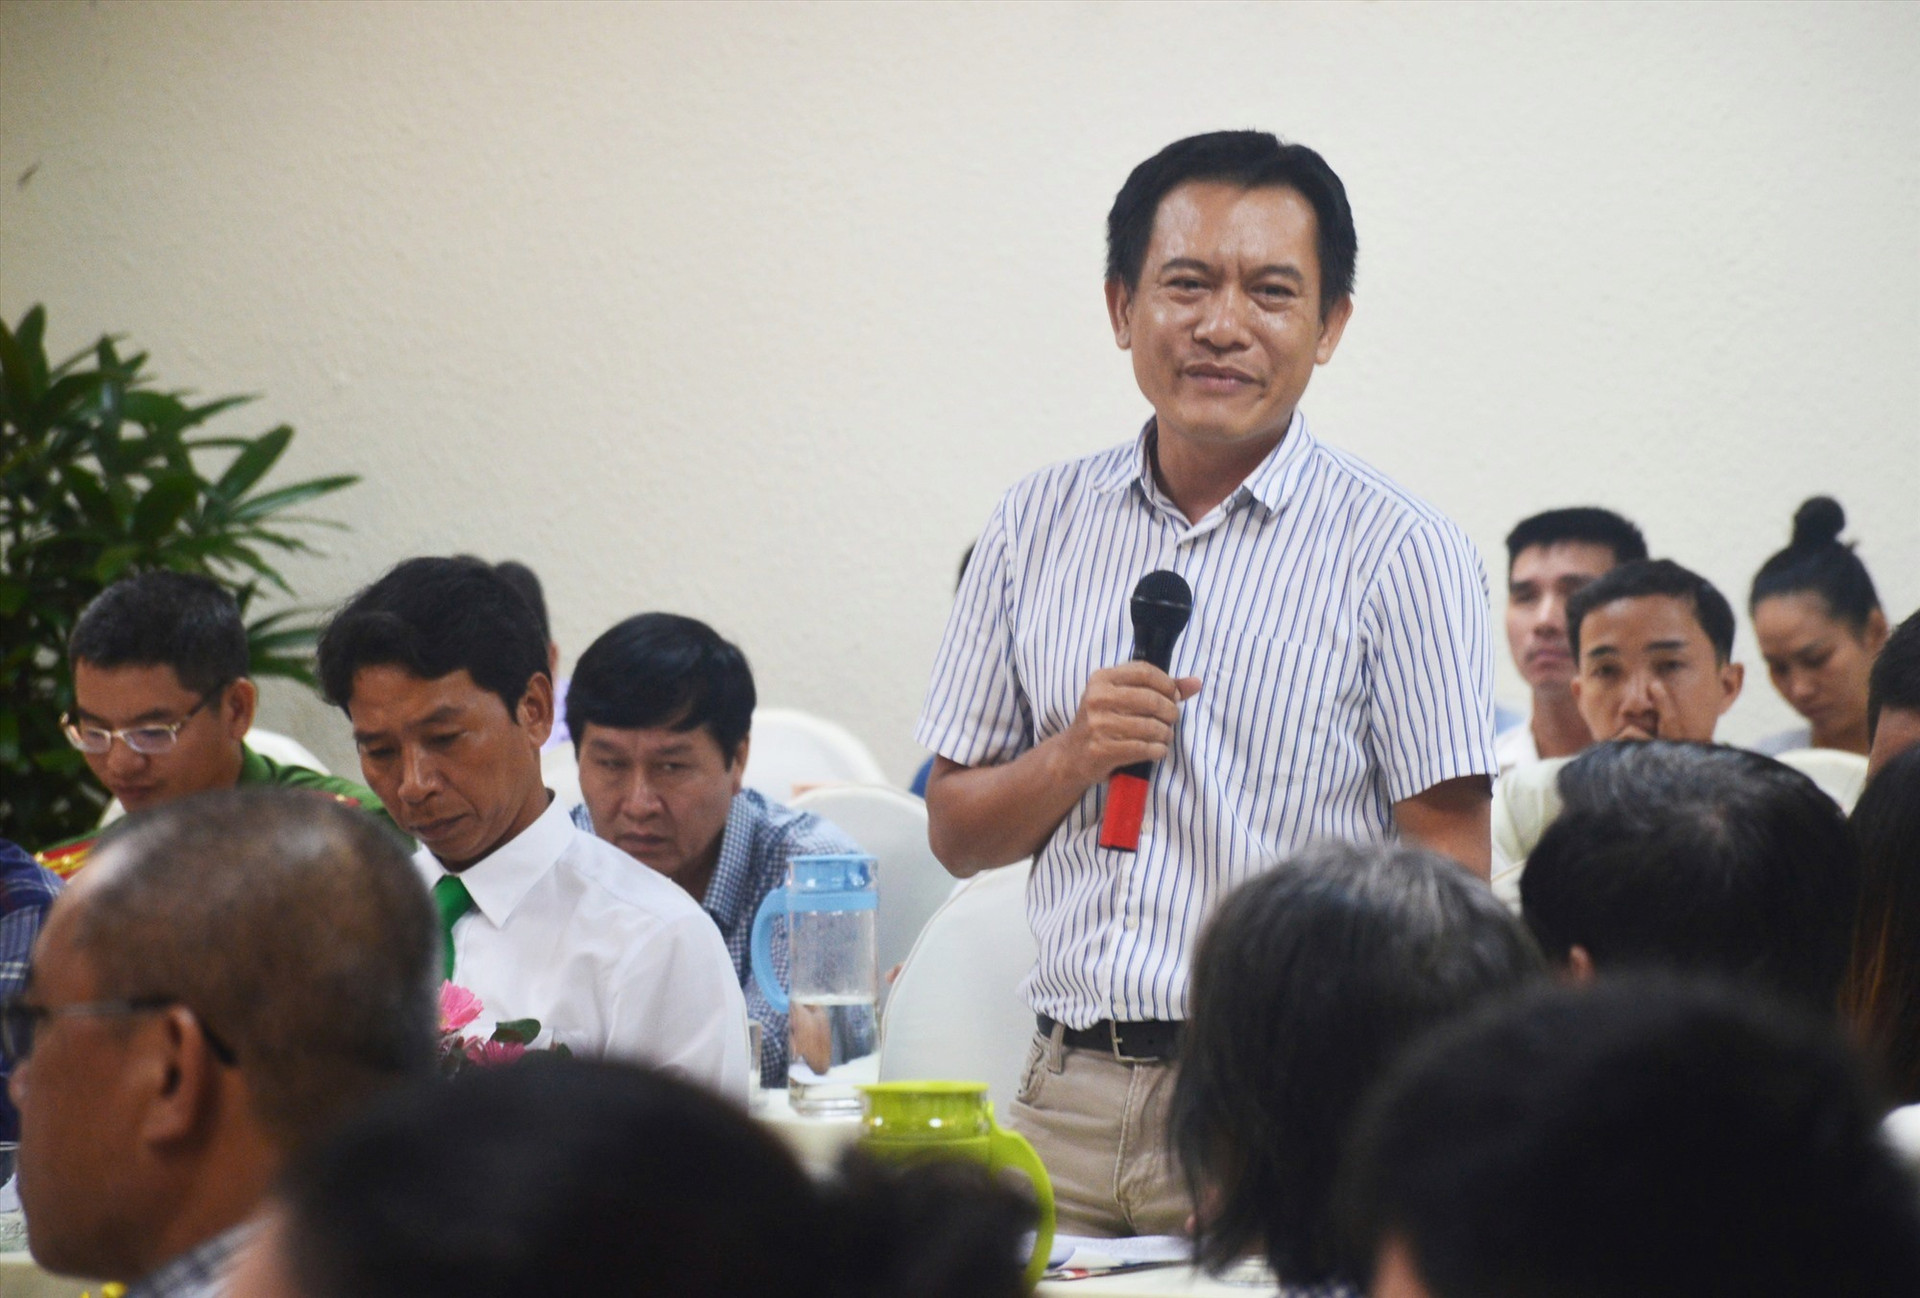 Ông Phan Xuân Thanh - Chủ tịch Hiệp hội Du lịch Quảng Nam phát biểu tại buổi gặp gỡ. Ảnh: Q.T